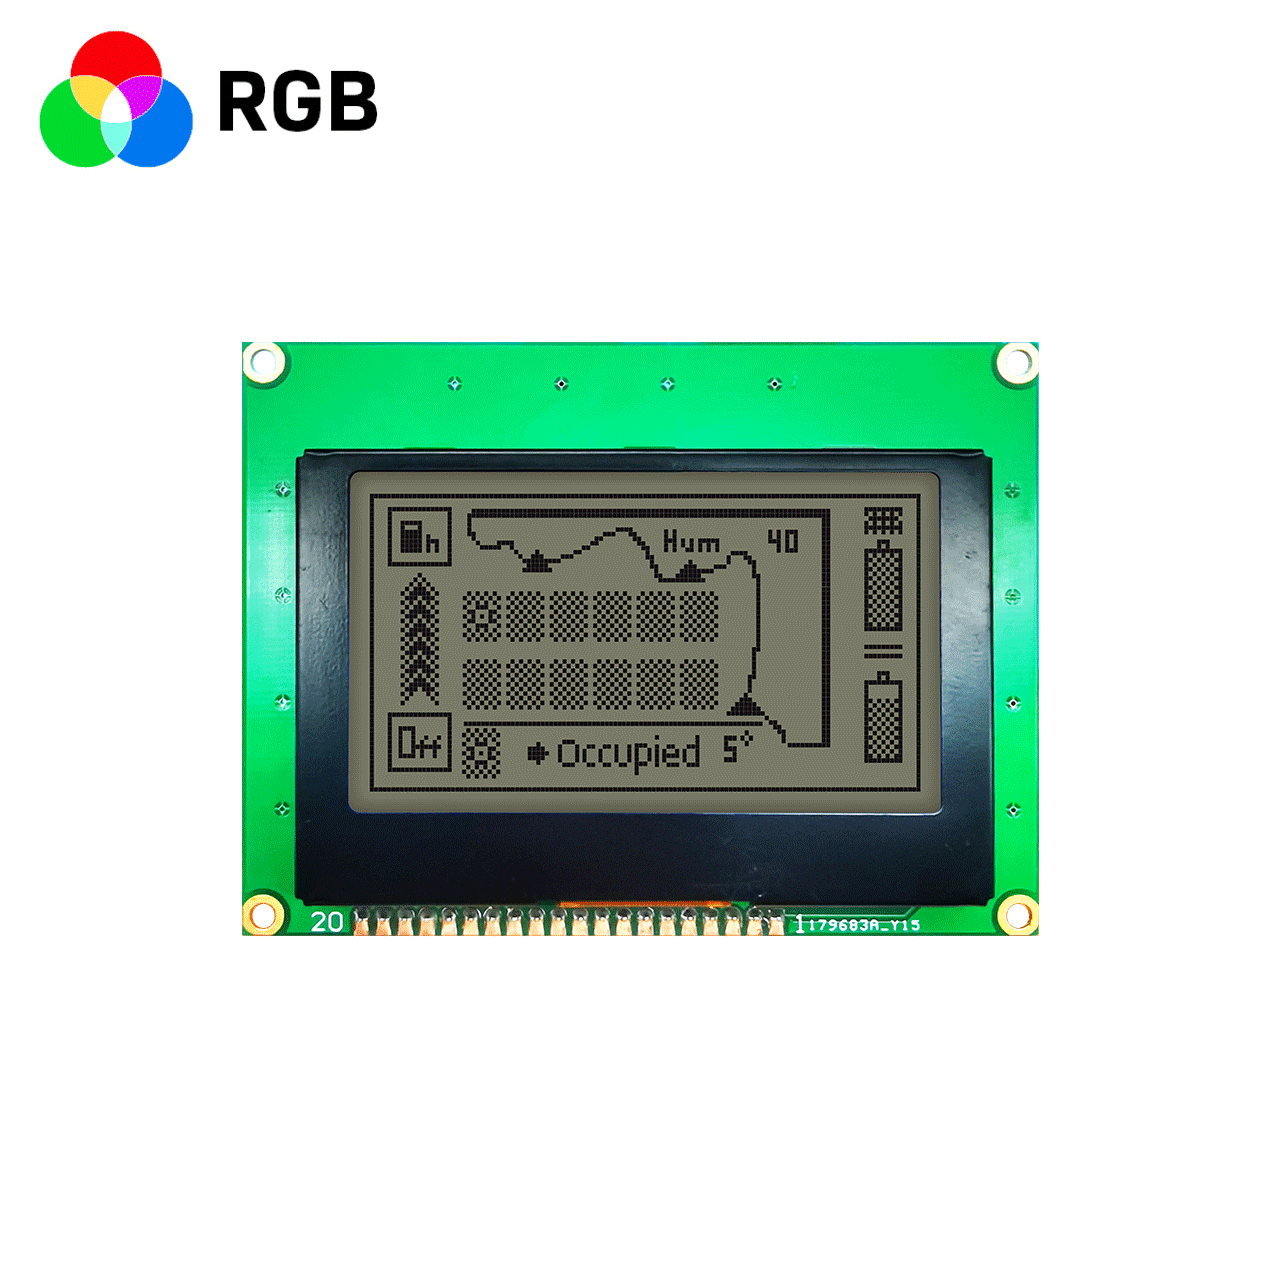 3.0 英寸 128x64 图形 LCD 液晶模组 | RGB 红绿蓝 | 适用于 Arduino | SPI 接口 | 3.3V